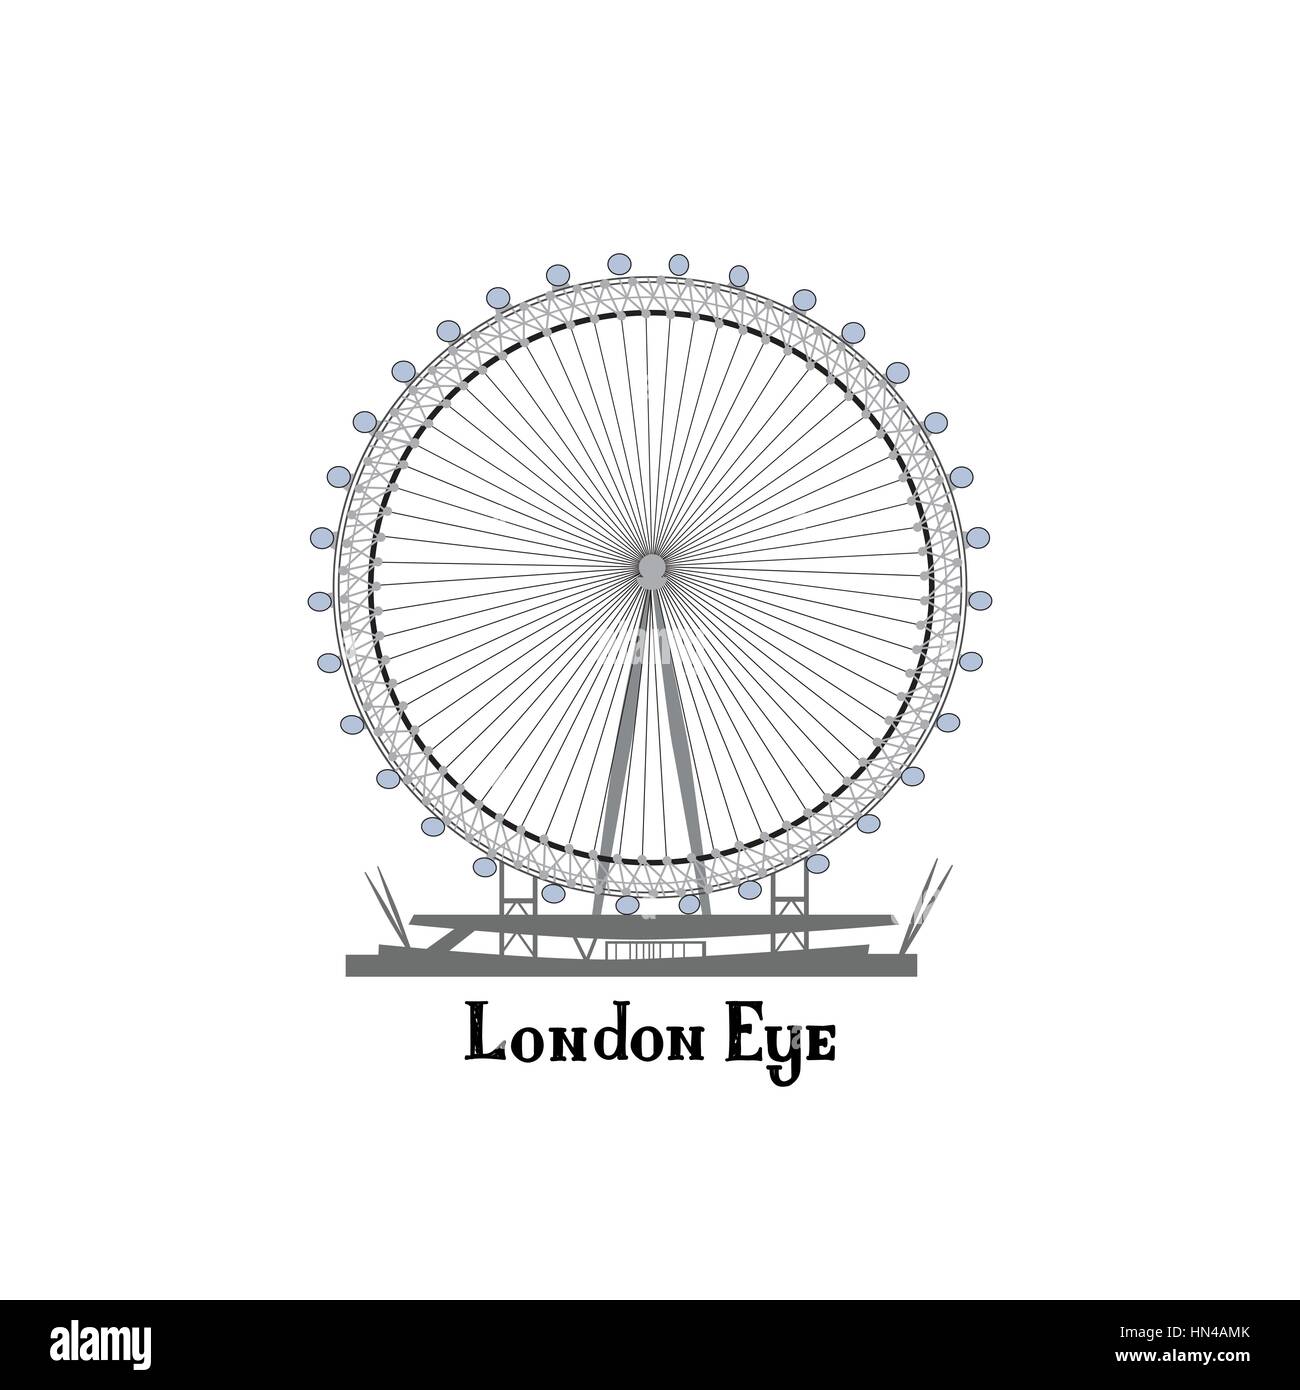 Reisen London City Place. englisch Sehenswürdigkeiten London Eye sightseeing das Großbritannien Hintergrund design Element. Stock Vektor